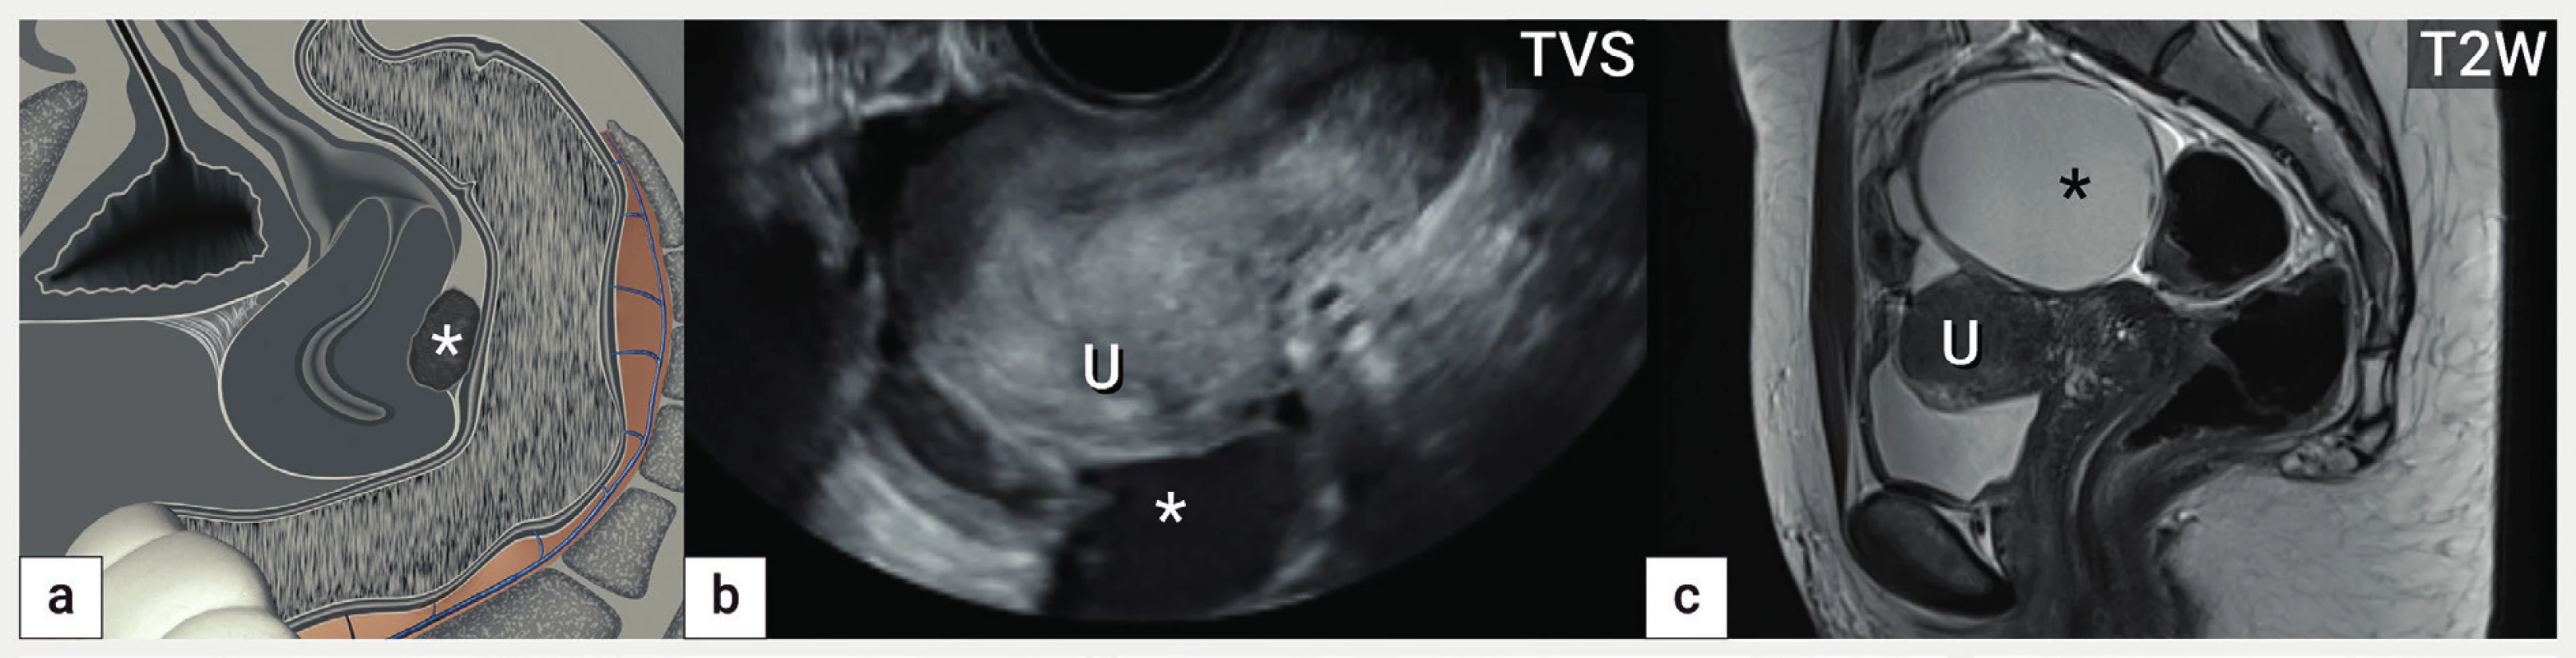 Děloha tvaru otazníku<br>
Schéma obliterace pánve s patrnou dělohou tvaru ‚otazníku' na podkladě adhezí zadní stěny děložní k endometroidní cystě (hvězdička),
zároveň přítomny srůsty obliterující vezikouterinní pliku (a), ultrazvukový obraz dělohy s pevnou adhezí zadní stěny k endometroidní cystě
(hvězdička) (b), magnetická rezonance obliterovaného Douglasova prostoru na podkladě fixace dělohy k velké cystě (hvězdička) (c).
U – uterus, TVS – transvaginální sonografie, T2W – T2 vážené obrazy v magnetické rezonanci